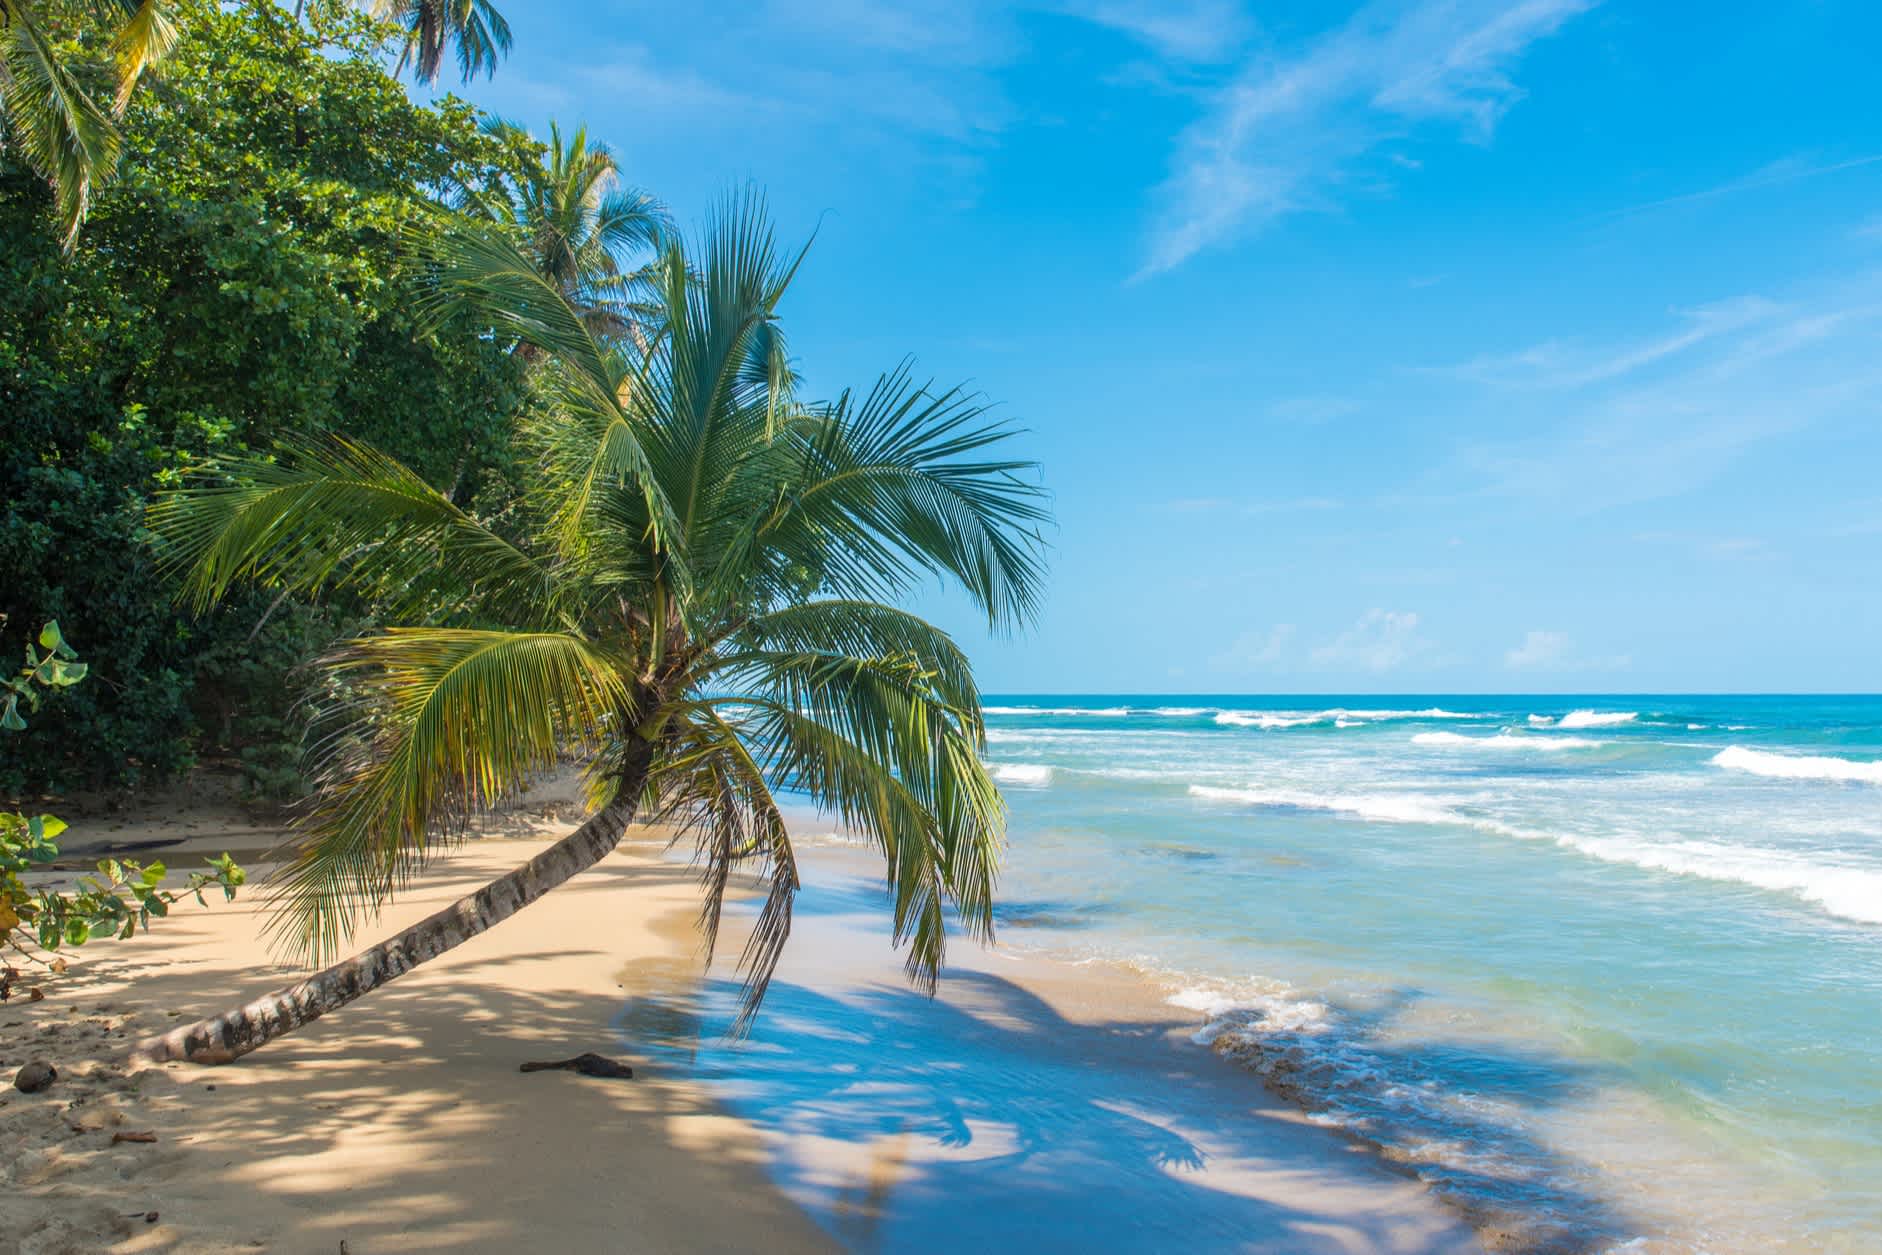 Les vacances à la plage au Costa Rica, c'est mieux pendant la saison sèche.